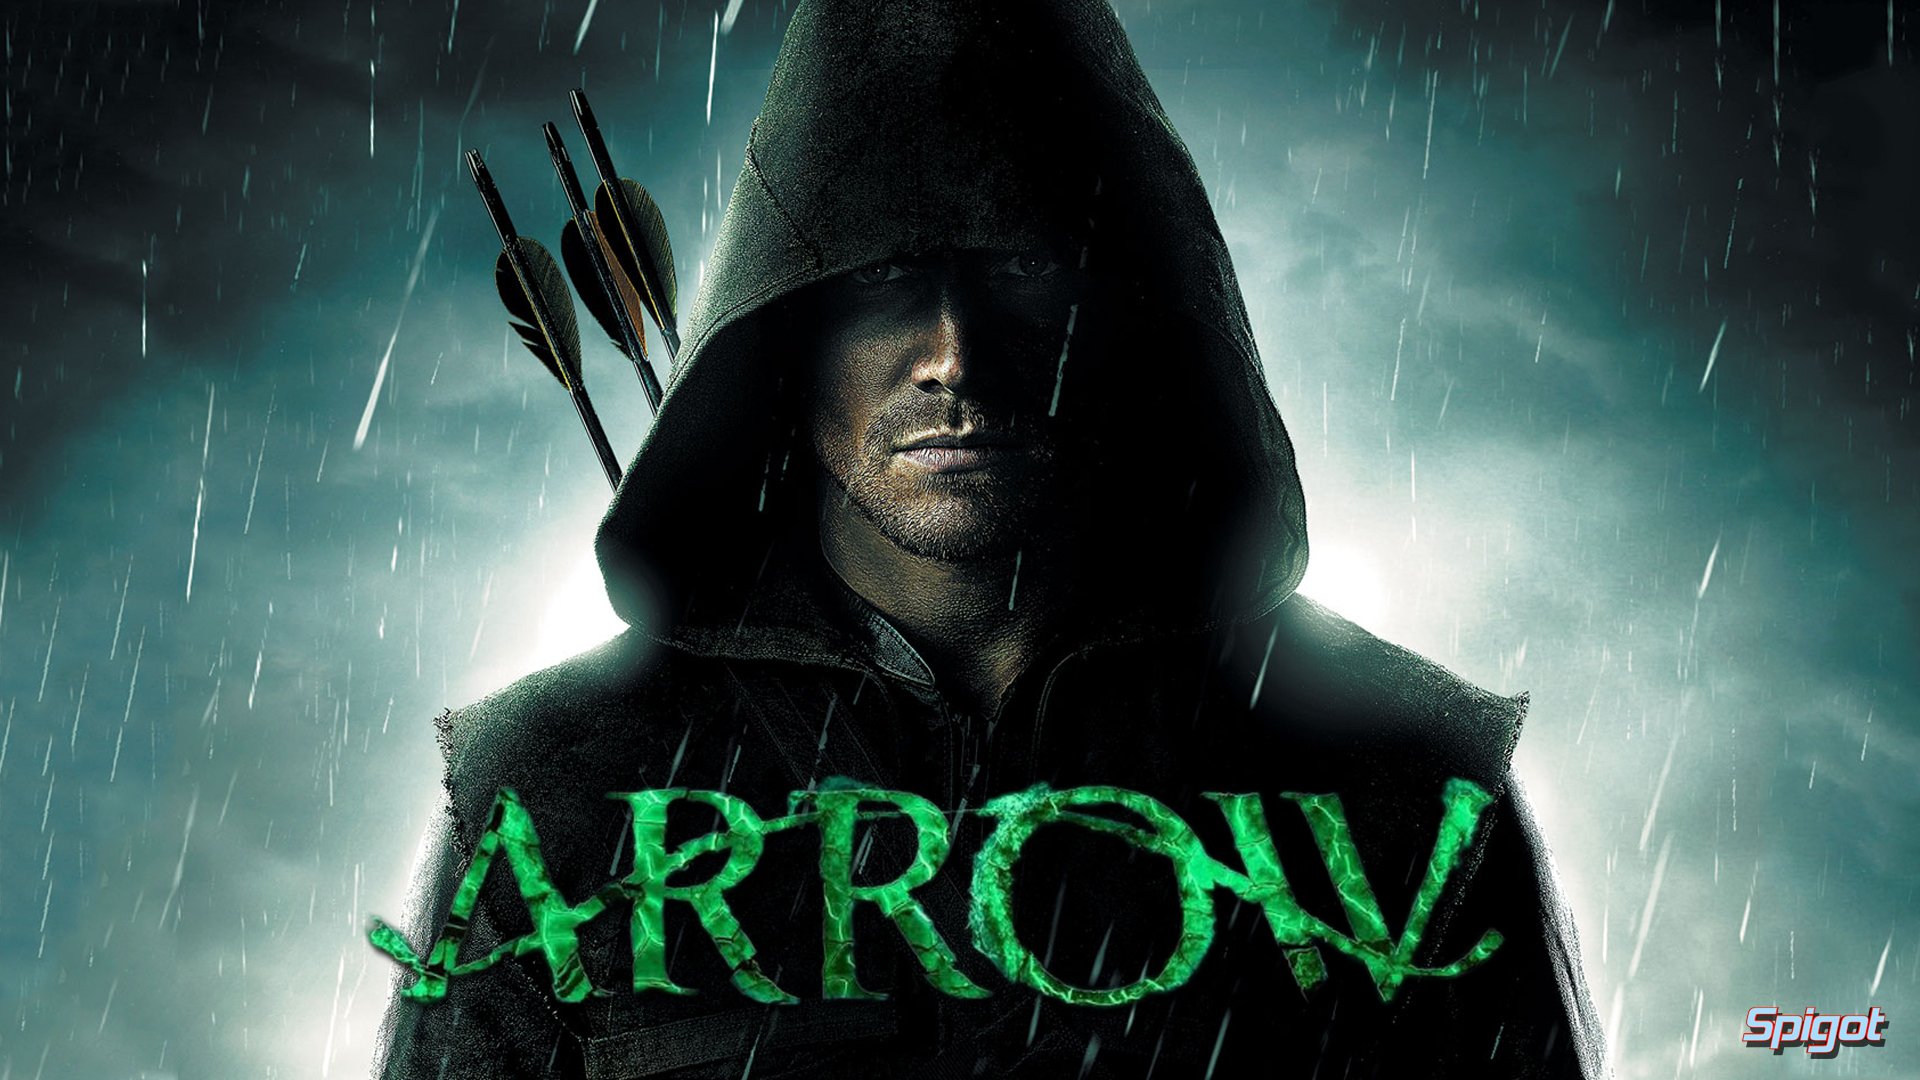 People 1920x1080 Arrow (TV series) warrior Green Arrow TV TV series Oliver Queen men